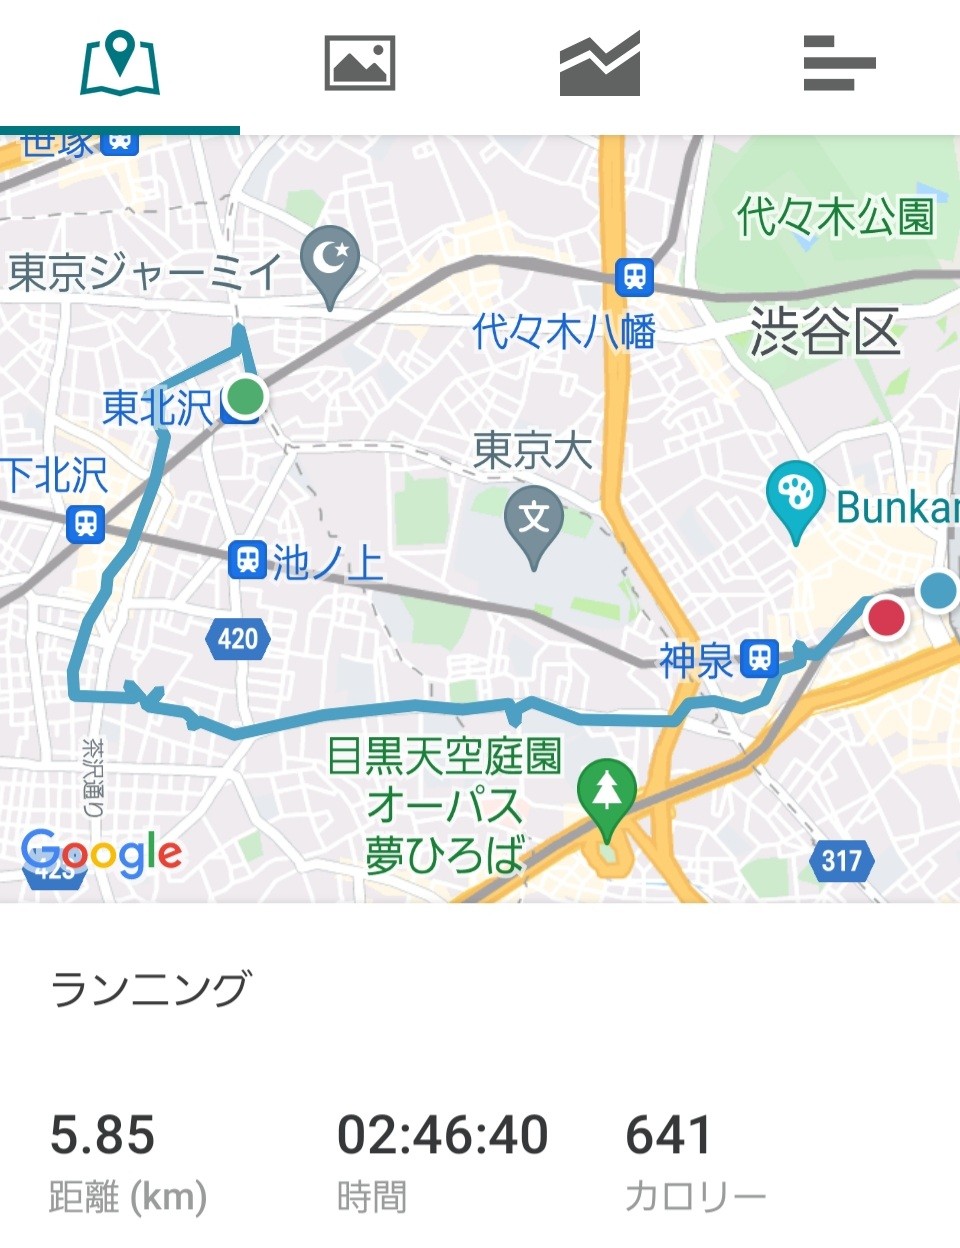 フォトンエッジ 青木珈琲店店長 今日は東北沢から渋谷までを歩きました 東京古道散歩 グルドン